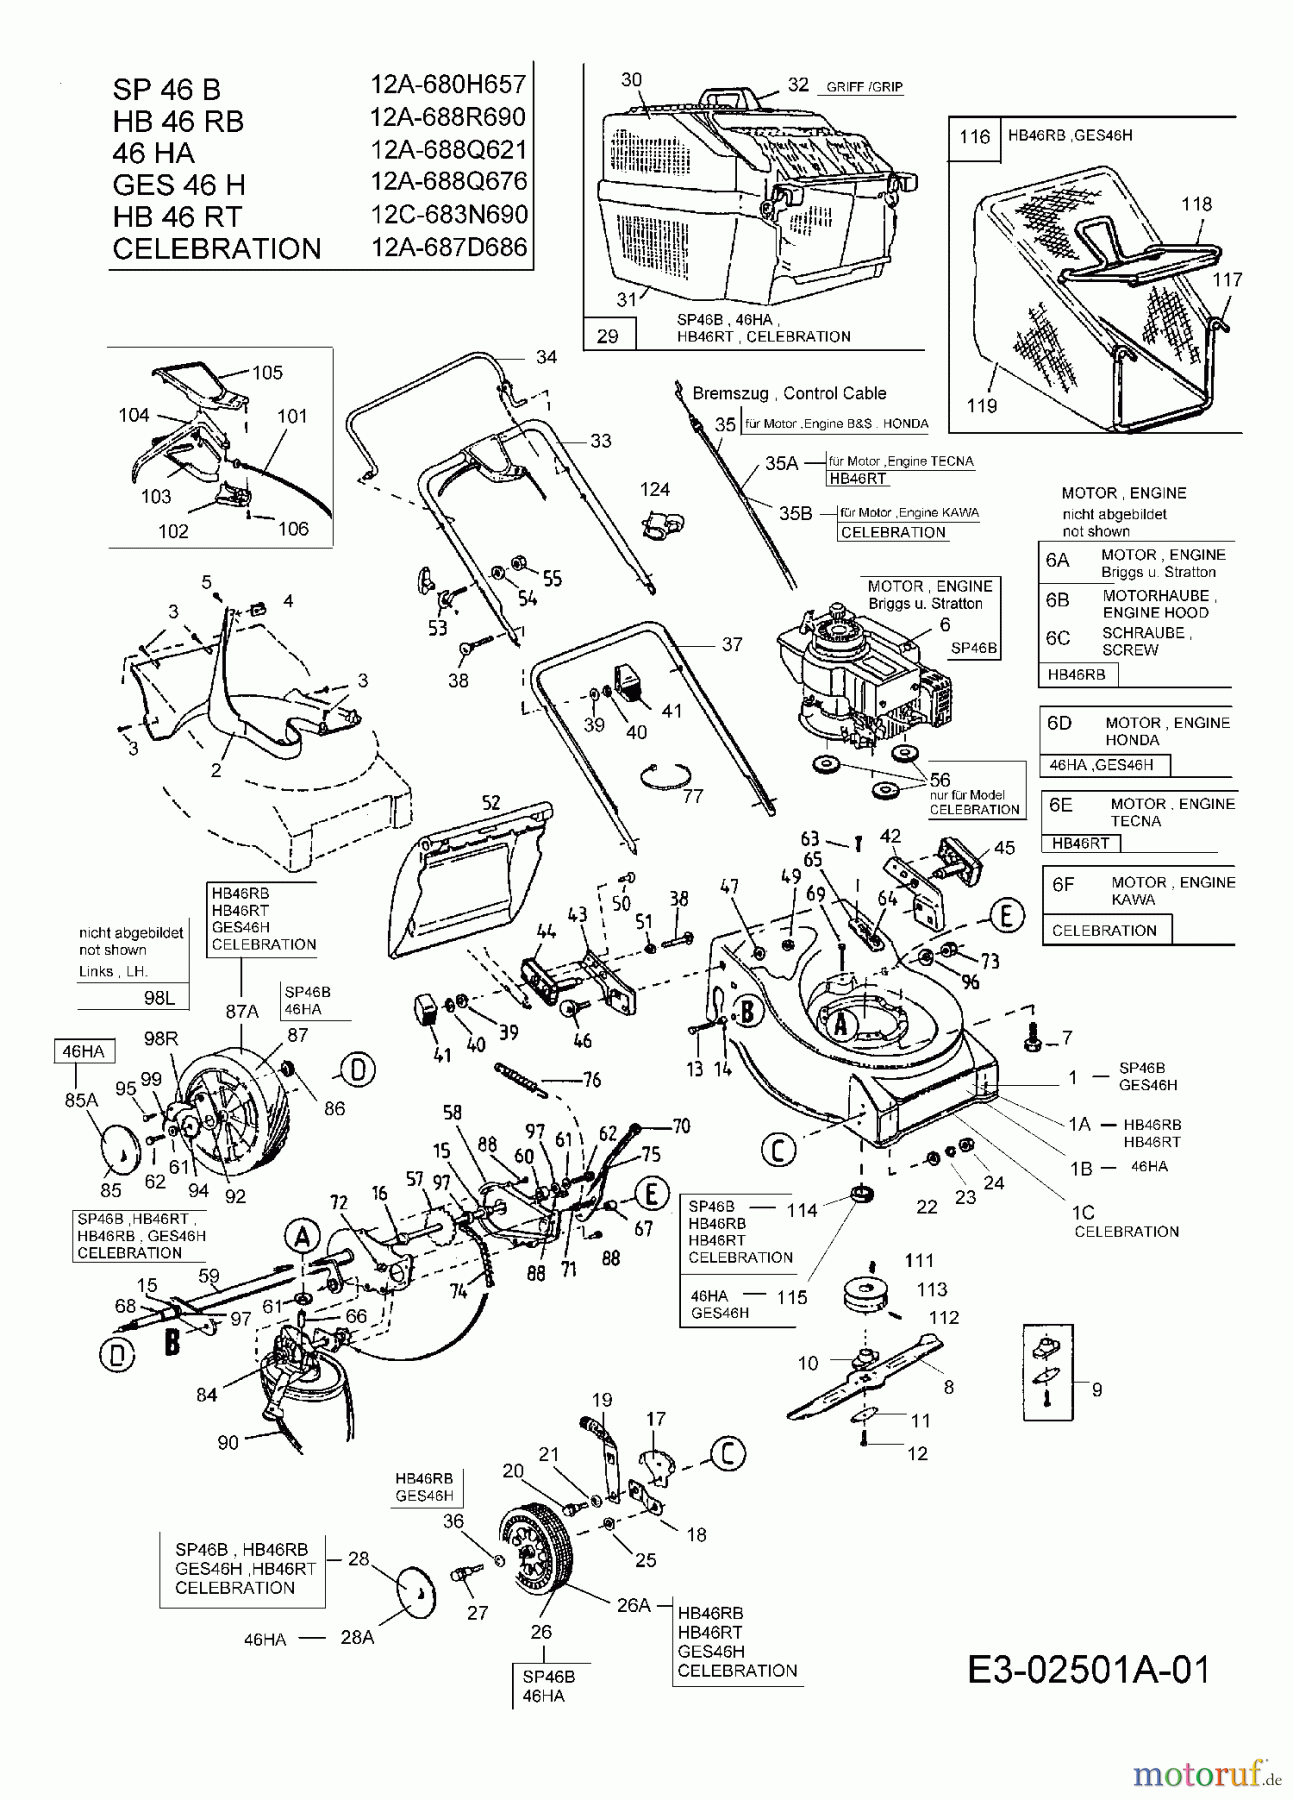  MTD Motormäher mit Antrieb GES 46 H 12A-688Q676  (2005) Grundgerät